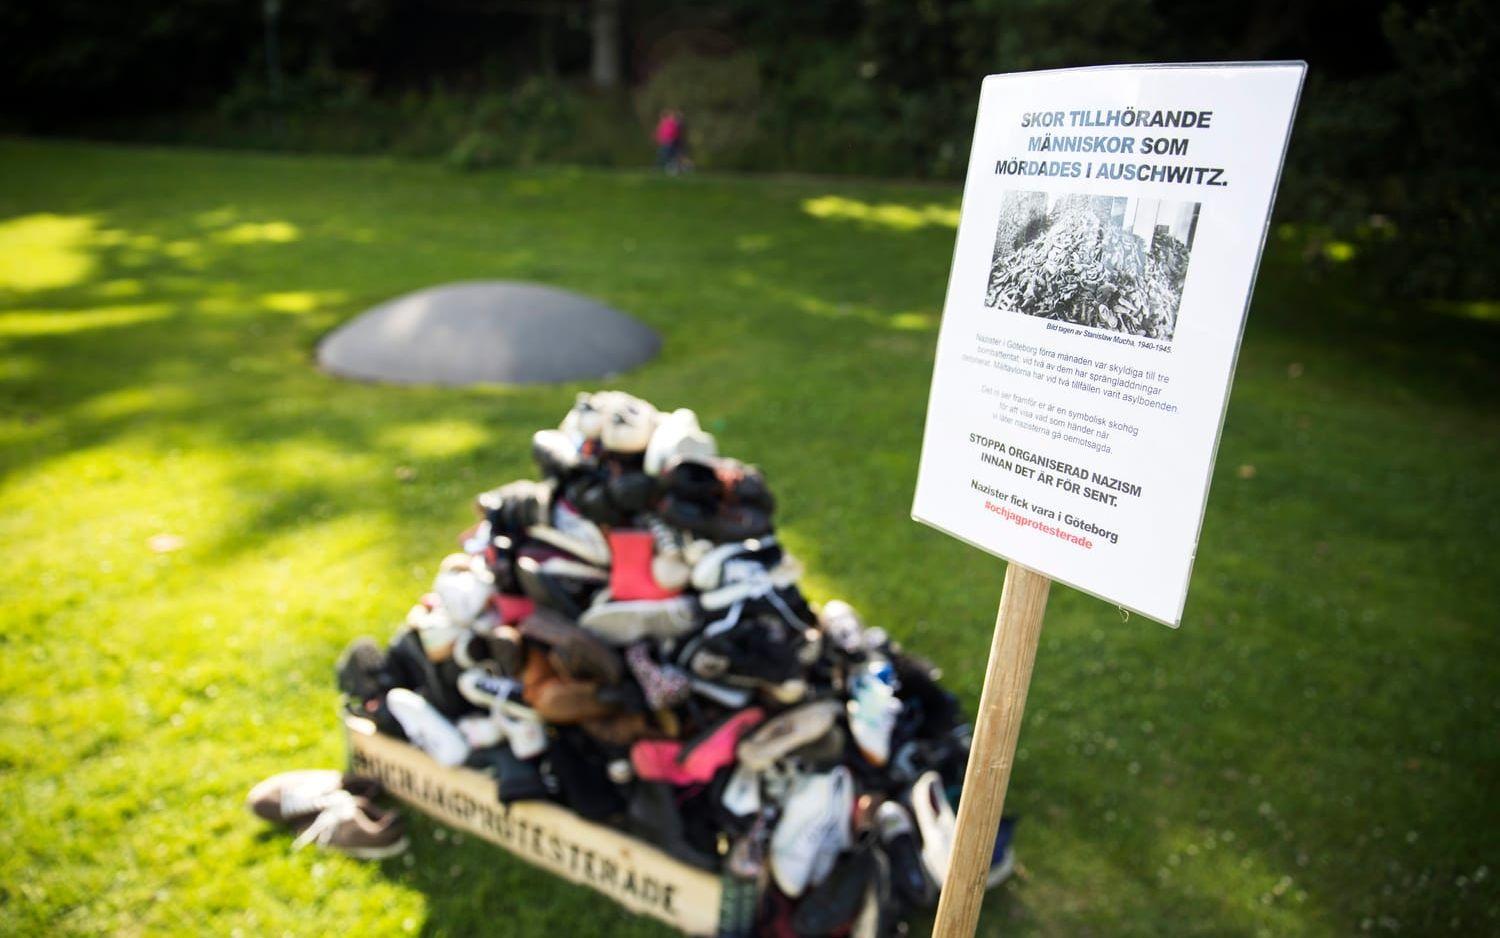 "Skor tillhörande människor som mördades i Auschwitz", står det bland annat på skylten. FOTO: Anders Ylander